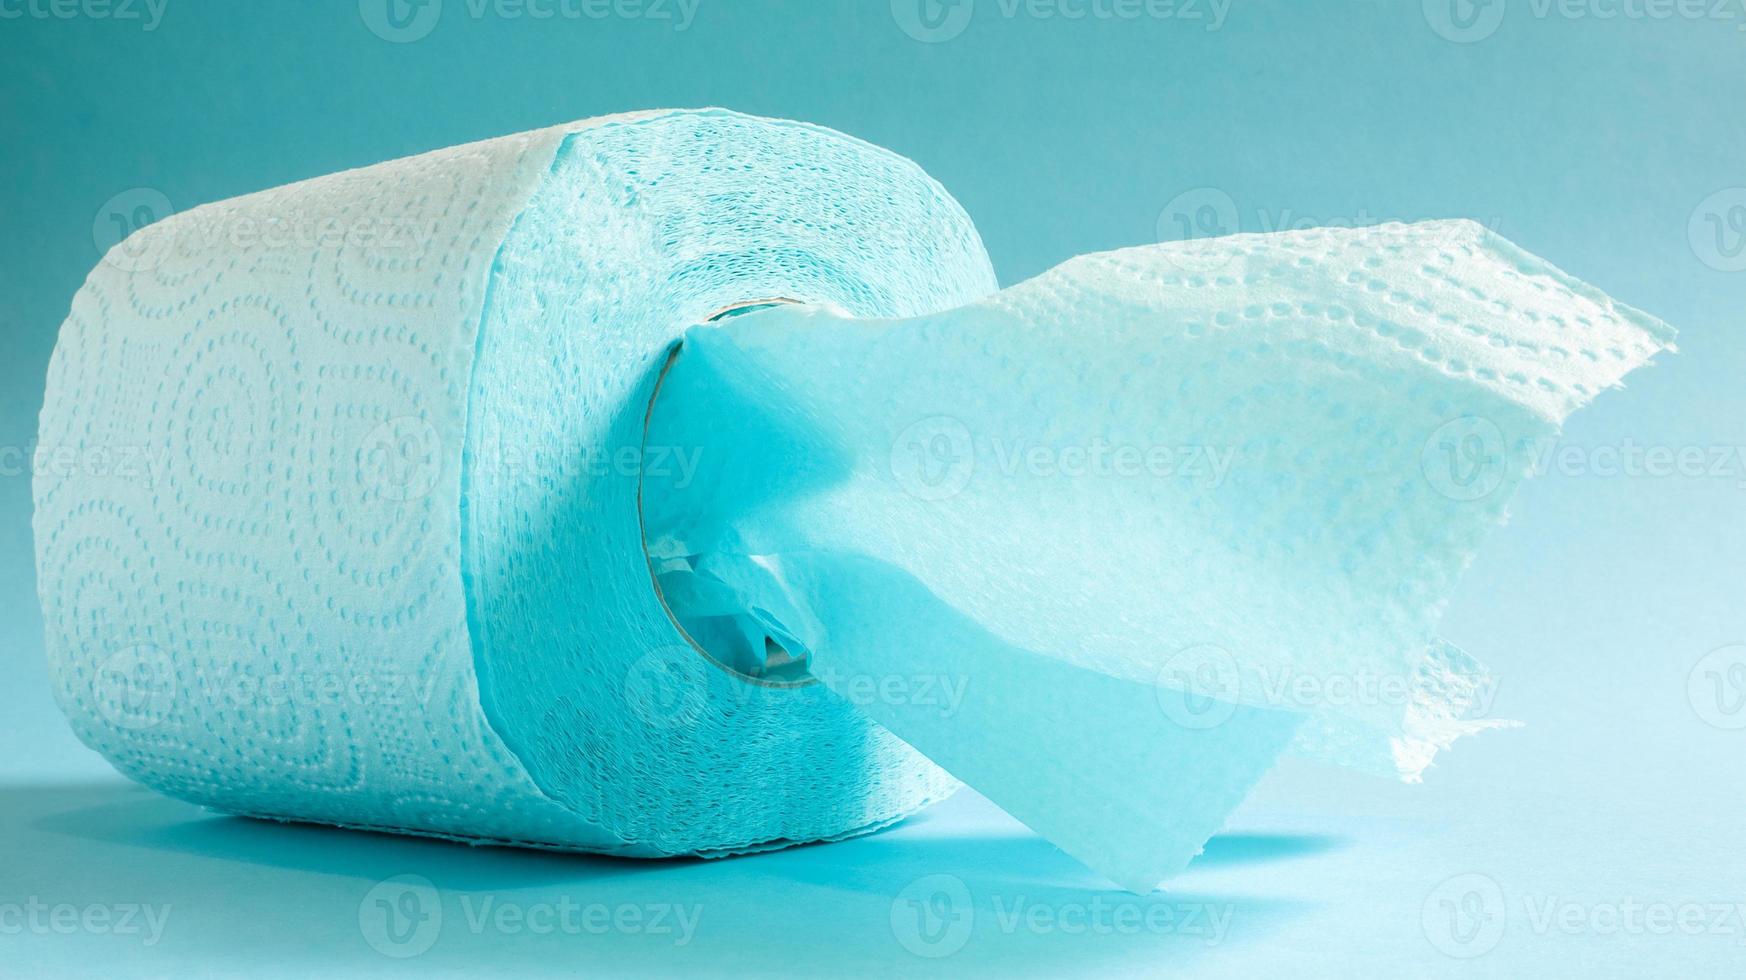 Blaue Rolle modernes Toilettenpapier auf blauem Hintergrund. ein Papierprodukt auf einer Papphülle für Hygienezwecke aus Zellulose mit Ausschnitten zum einfachen Aufreißen. geprägte Zeichnung foto